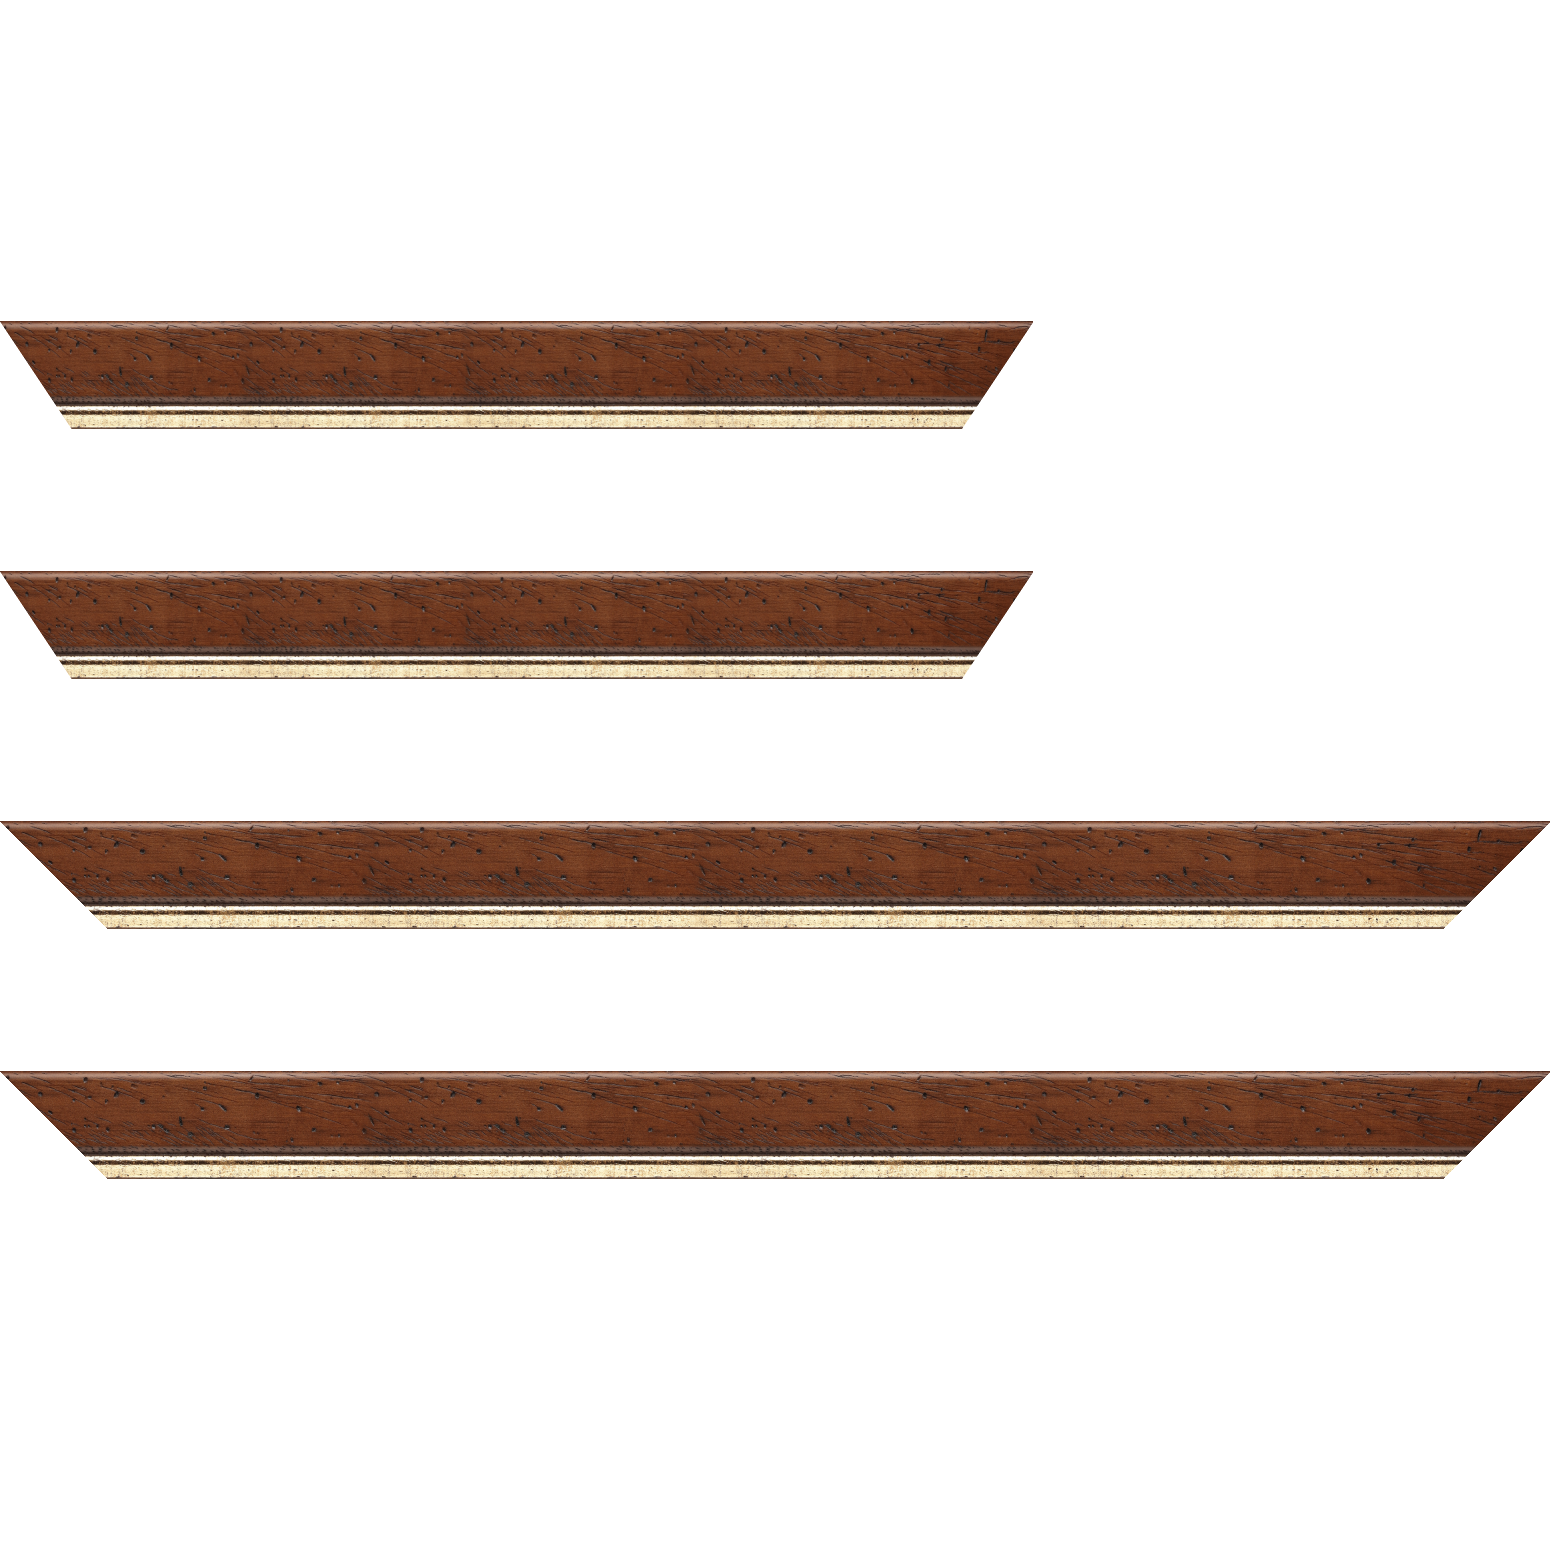 Baguette bois profil arrondi largeur 3.5cm marron satiné classique filet or - 30x90